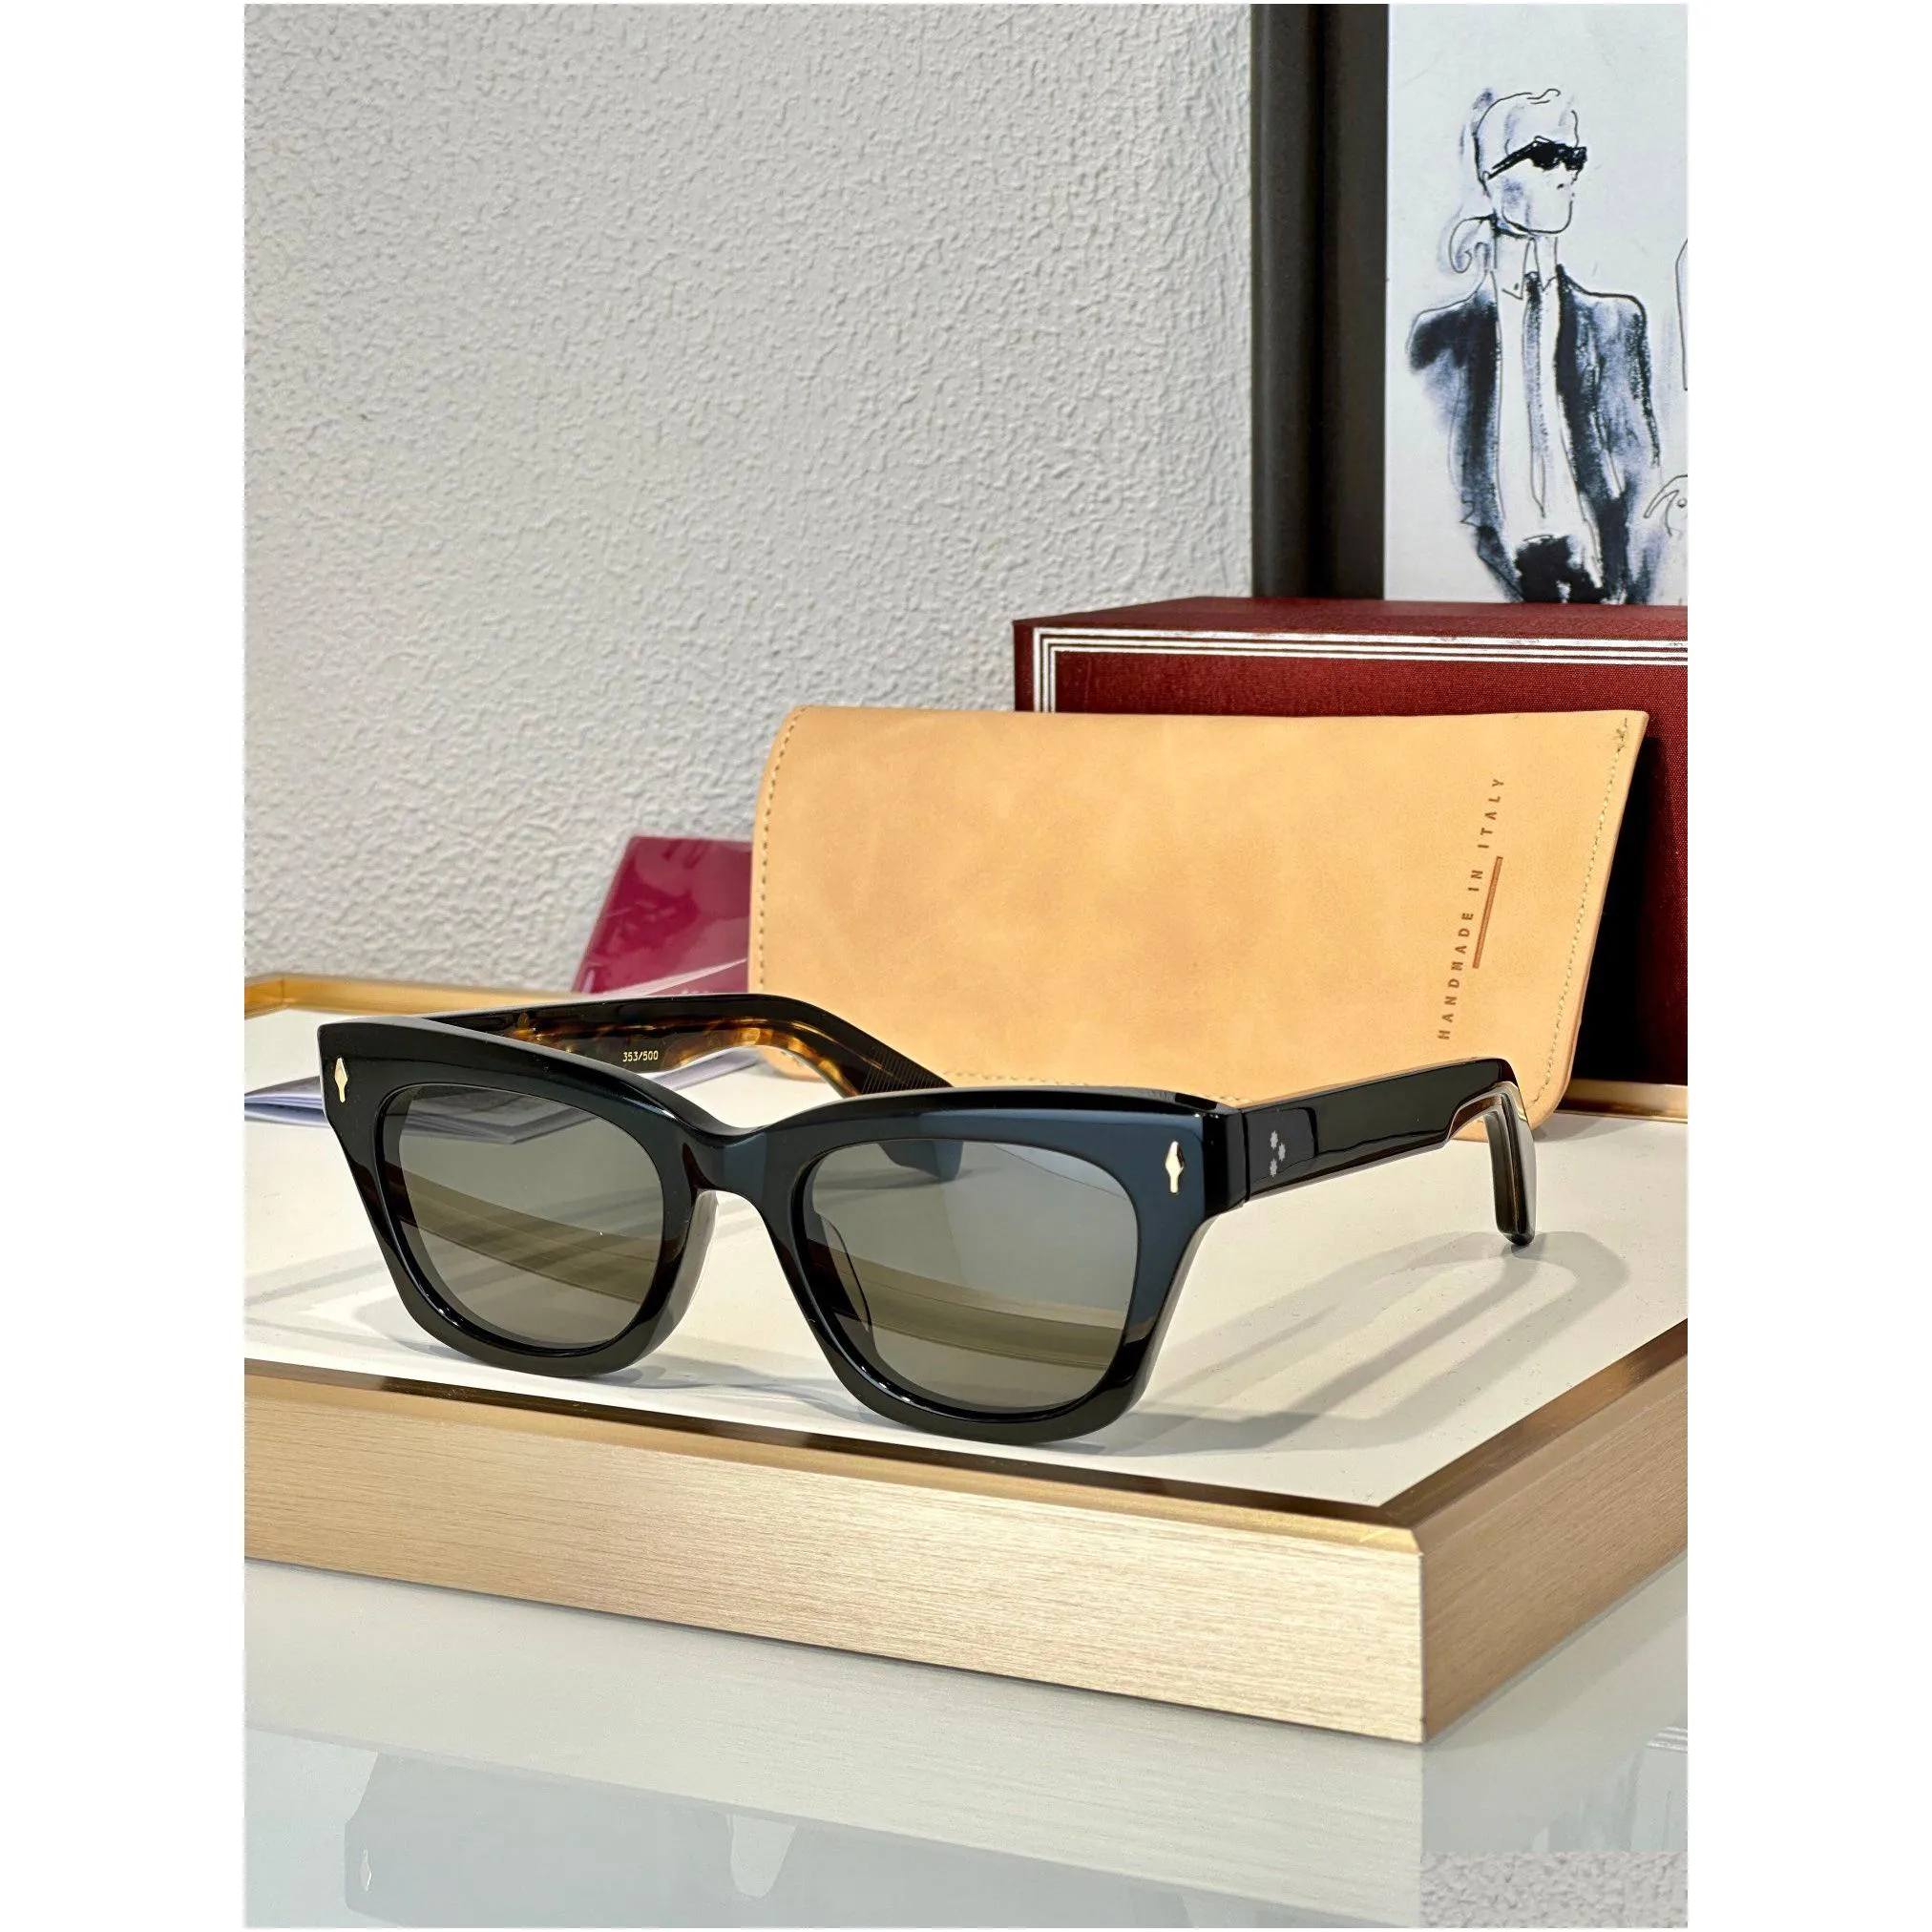 famous dealan designers sunglasses for men women cat eye sunglasses oem  frames luxury brand acetate eyewear retro uv400 protective lens handmade sun